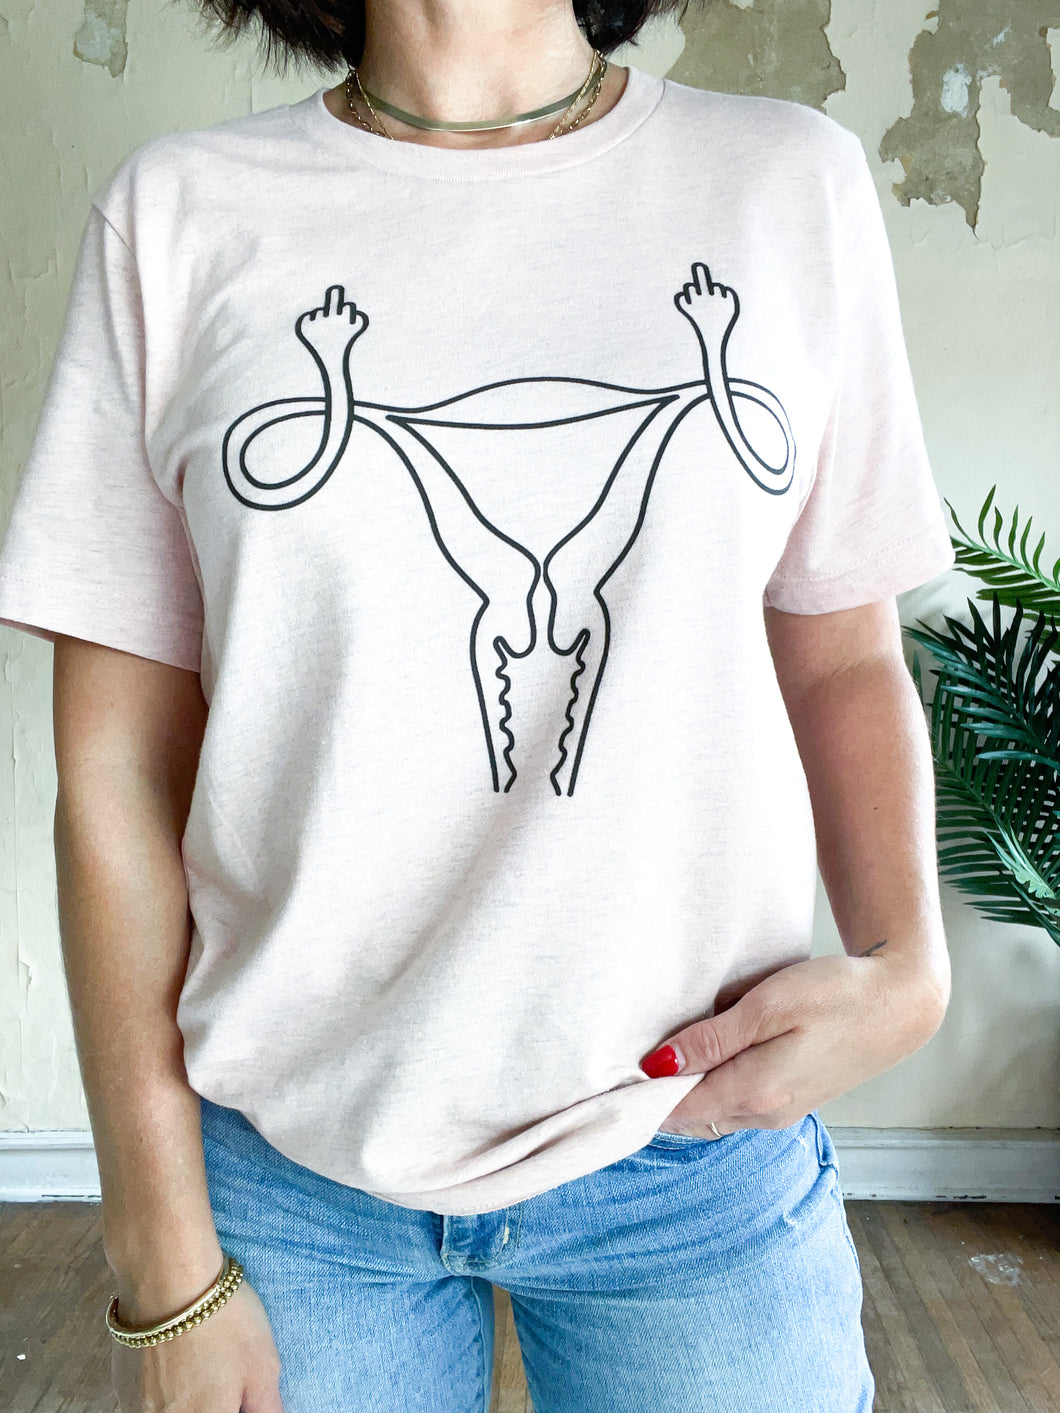 Middle Finger Uterus T-Shirt